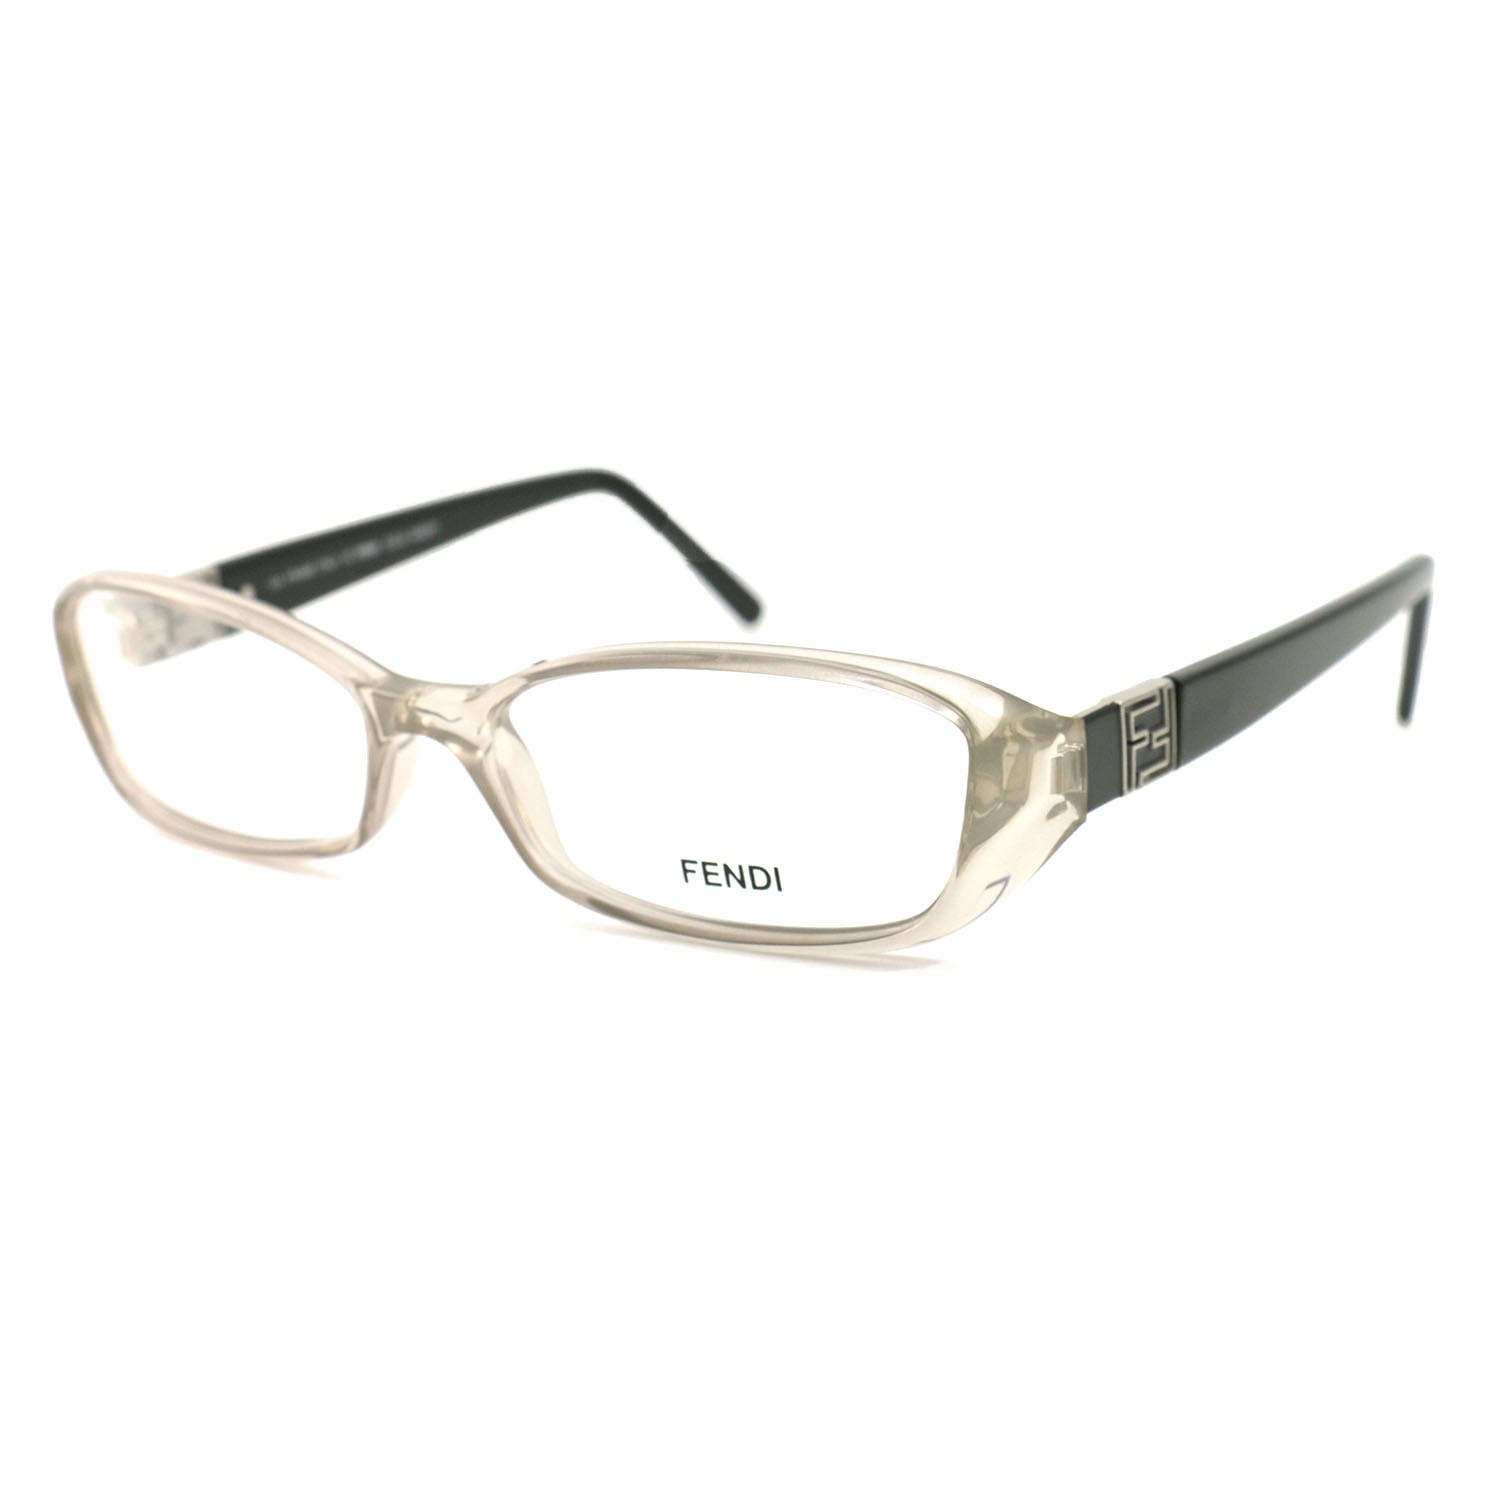 Fendi Womens Eyeglasses FF673 116 Clear/Black 53 16 135 Frames Oval ...